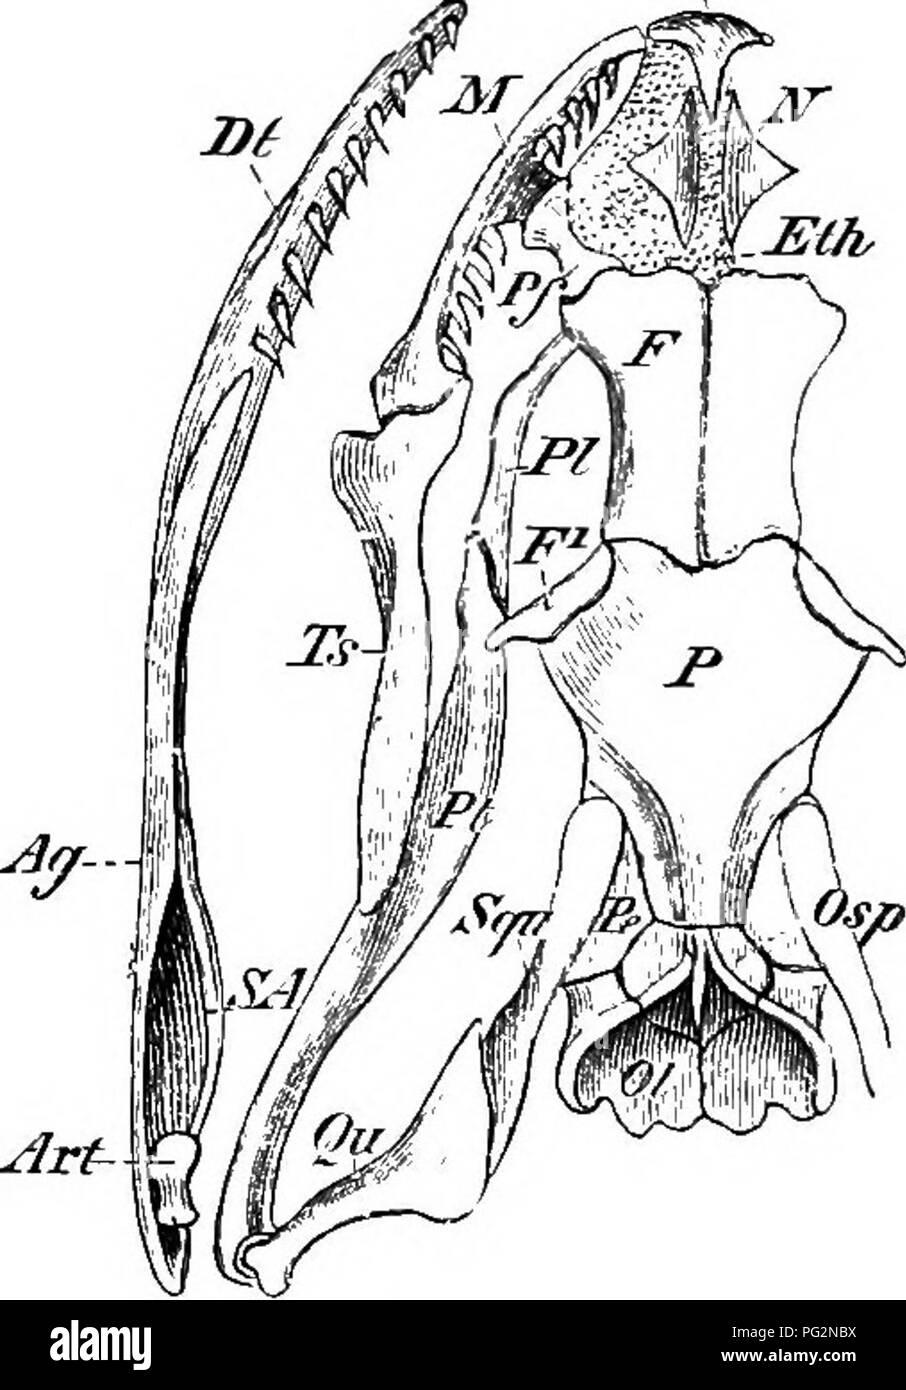 . Éléments de l'anatomie comparée des vertébrés. Anatomie, comparatif. Pmx â Foi/ Ol la DOCA (fa. ^^ rt Fig. 72.âSkull {Tropidonotus natrix de serpent), vue dorsale. Tig. 73.â ,, ,, ,, ,, vue ventrale. Condyle occipital, Cocc Osp ;, .supraoccipital ; 01, exoccipital ; Foe, fenestra ovalis ; Pe, P, périotiques ; F ; pariétal, frontal ; j'"^, postfrontal ; Pf, ethmoïde, Mh ; préfrontal ; N, nasal ; Pmx, premajcilla ; M, maxillaire ; BP, Bs ; basioccipital, basisphenoid ; Ch, narines postérieures ; Vo ; vomer, PI, palatine ; Pt ; ptérygoïde, Ts, os transversal ; Qii, quadrangulaire ; Squ, squamosales ; Art ; articulaire, Ag, un Banque D'Images